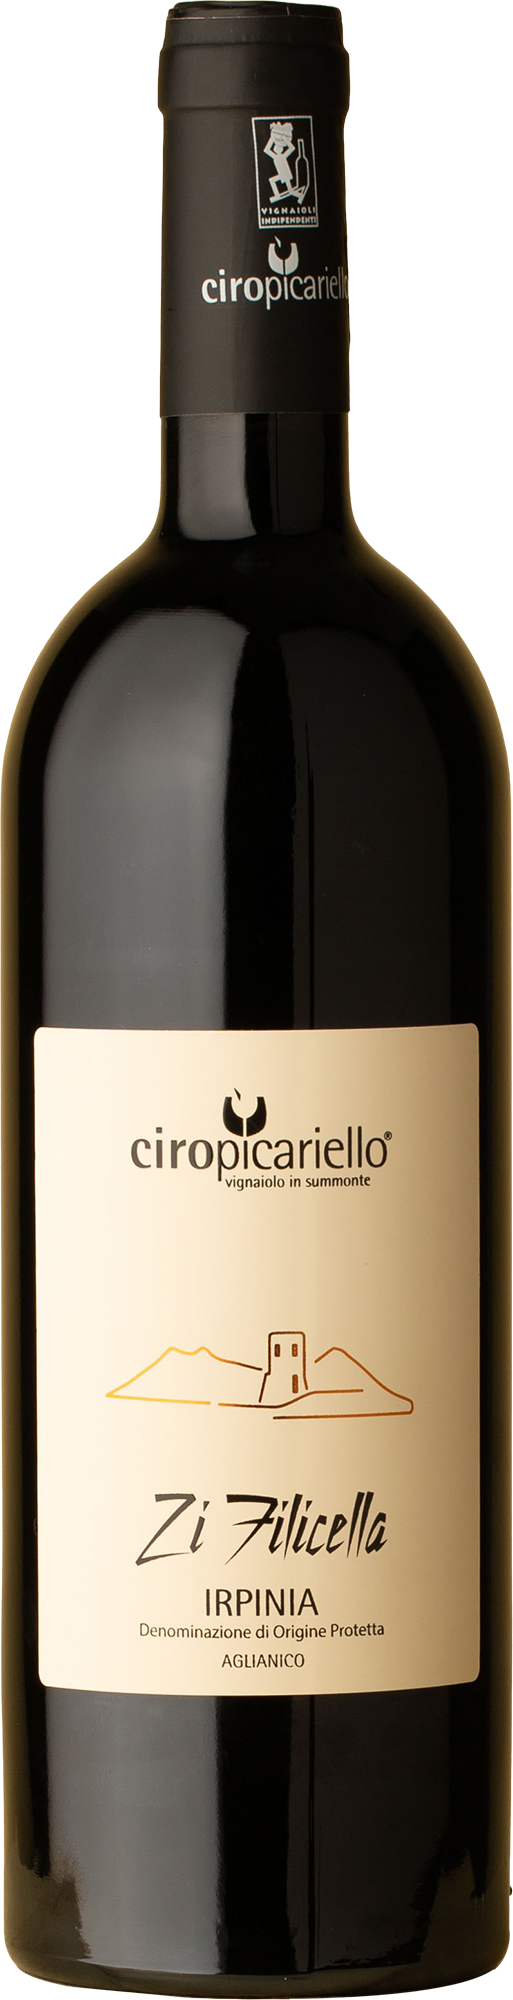 Ciro Picariello - Zi Filicella Aglianico 2019 Red Wine